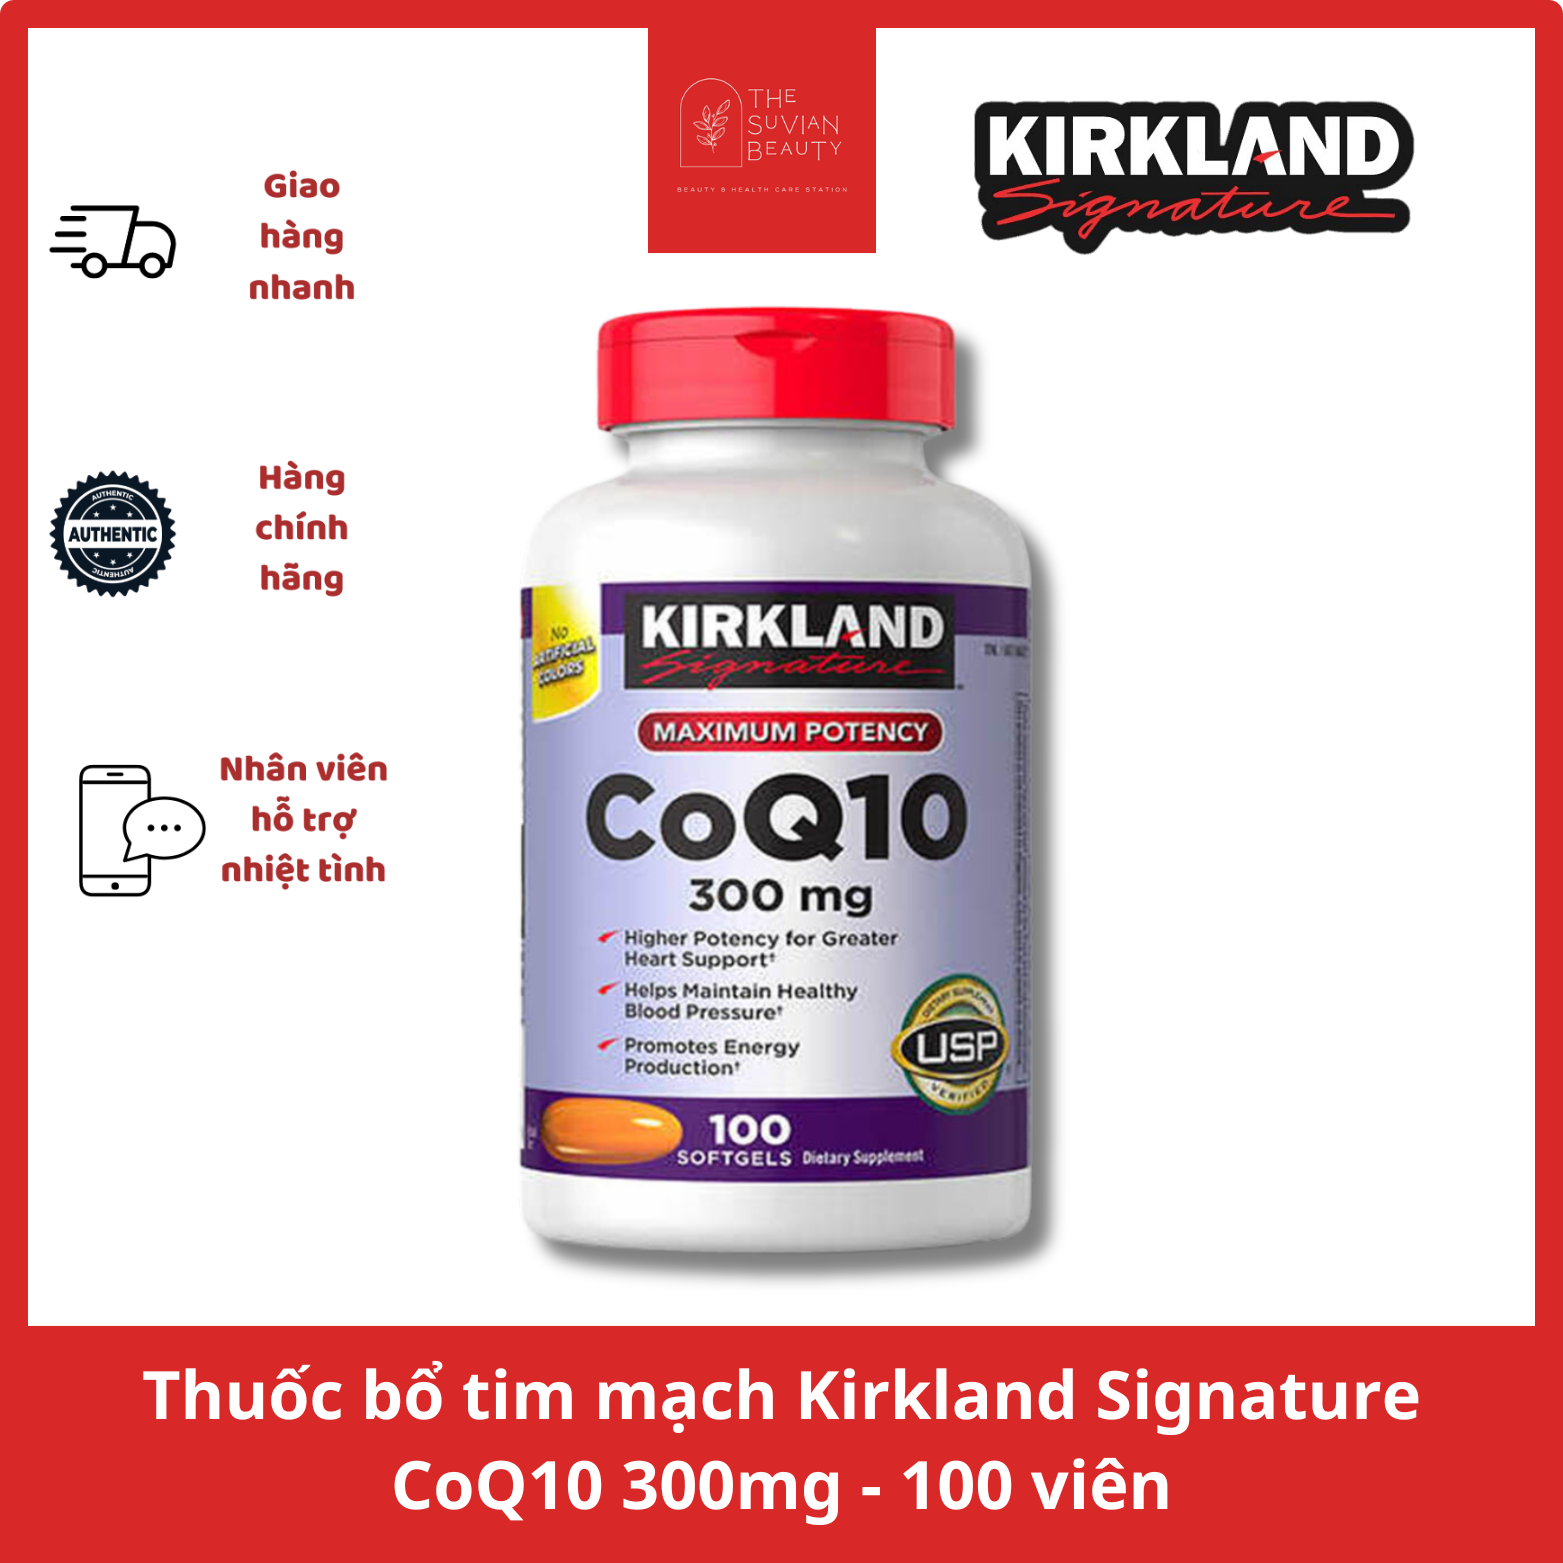 Thuốc bổ tim mạch Kirkland Signature CoQ10 300mg - 100 viên